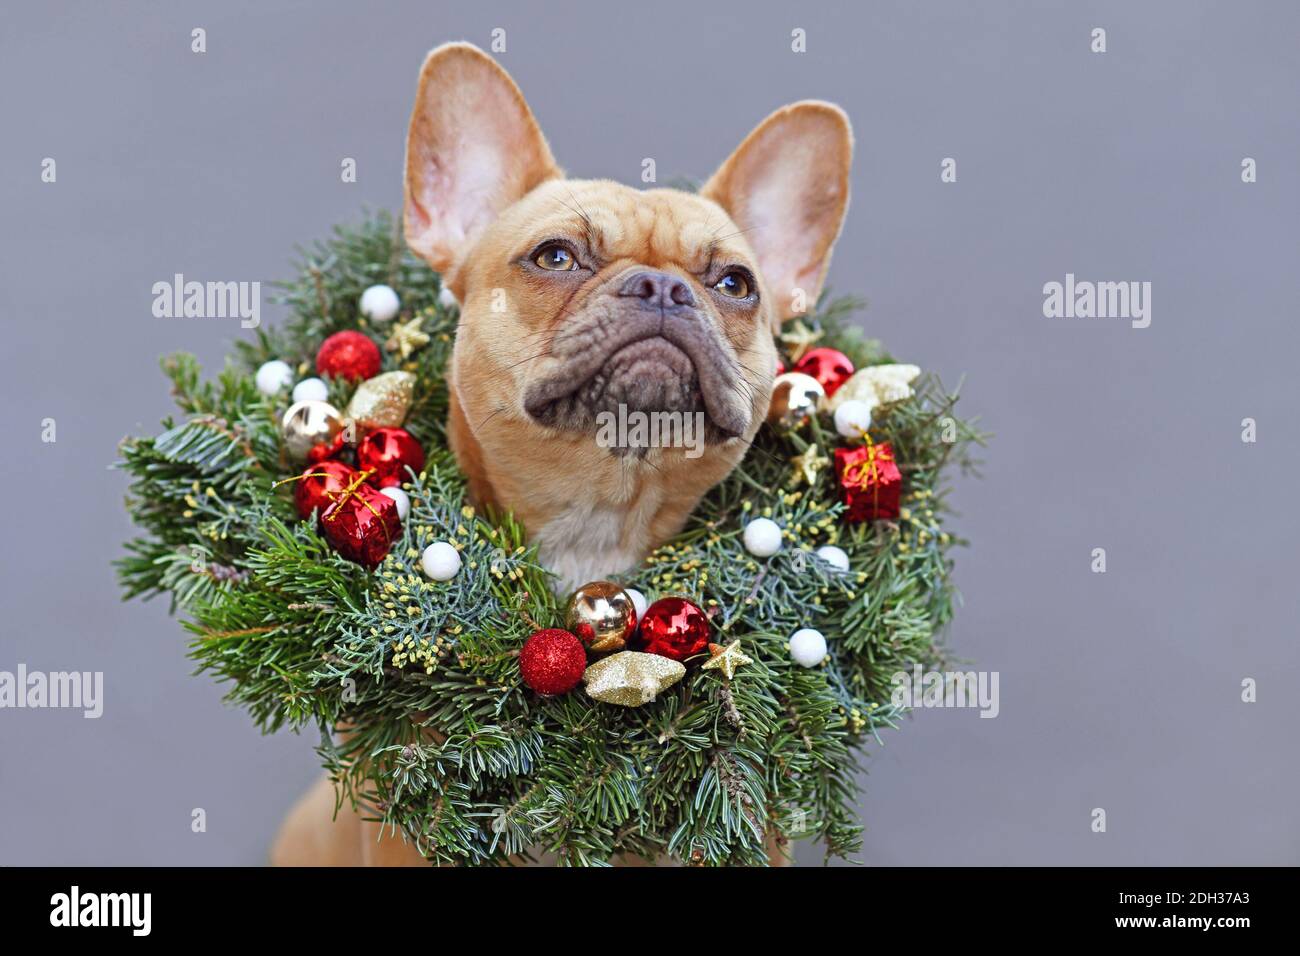 Französisch Bulldogge Hund trägt festliche Weihnachtskranz mit Stern und Ball Baum Kugeln um den Hals auf grauem Hintergrund Stockfoto